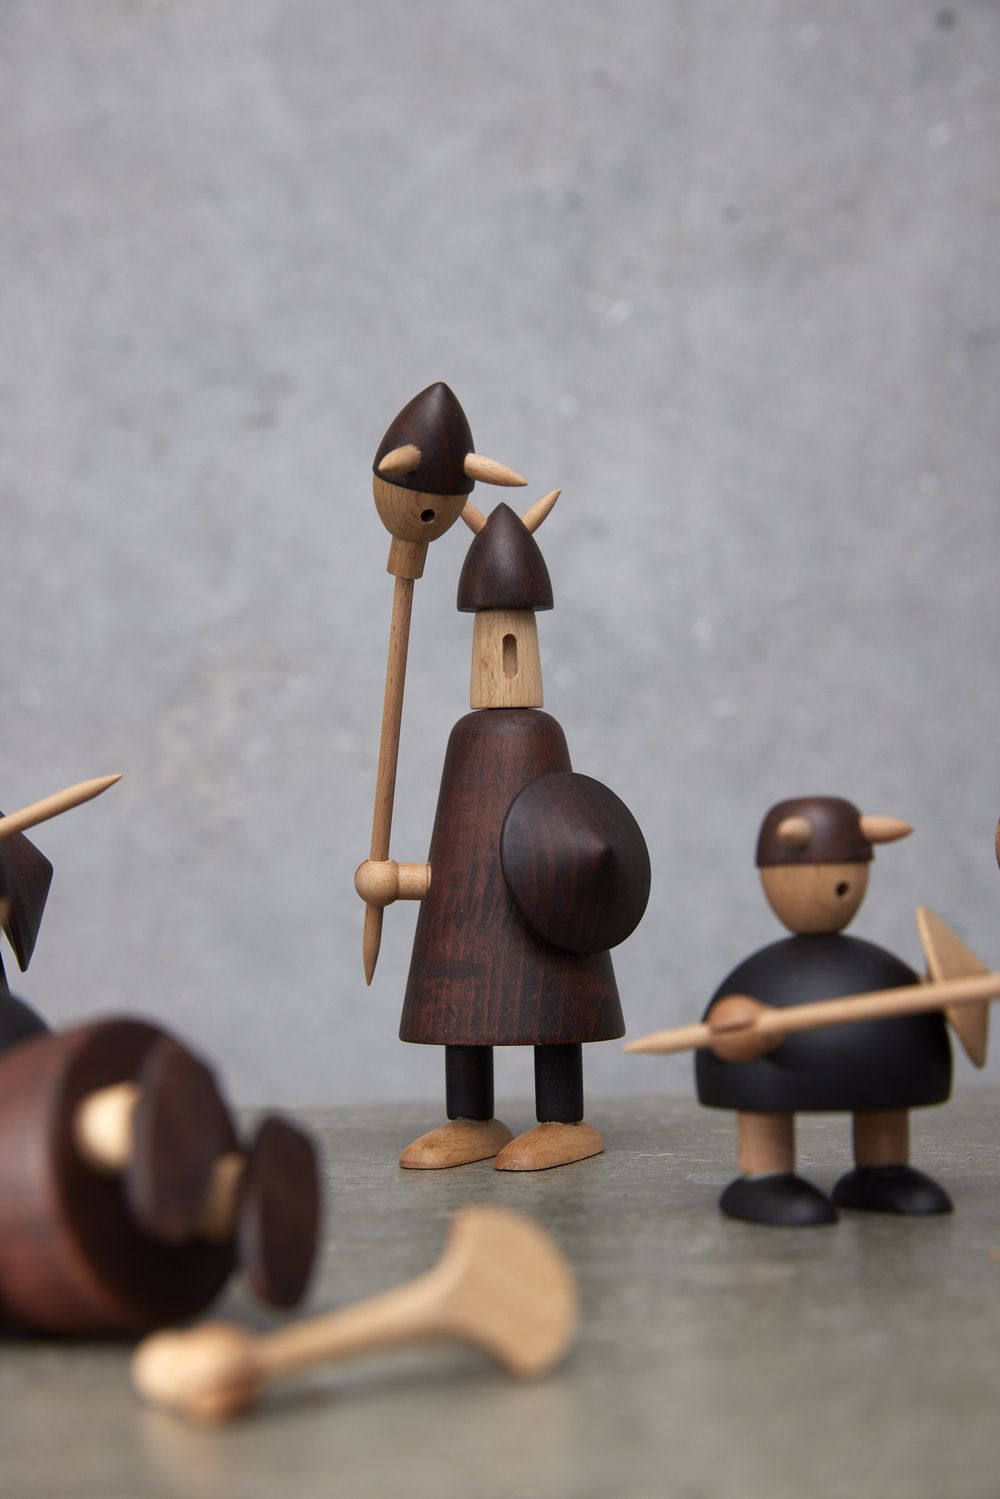 Andersen Furniture De Vikingen van Denemarken houten figuur, set van 3